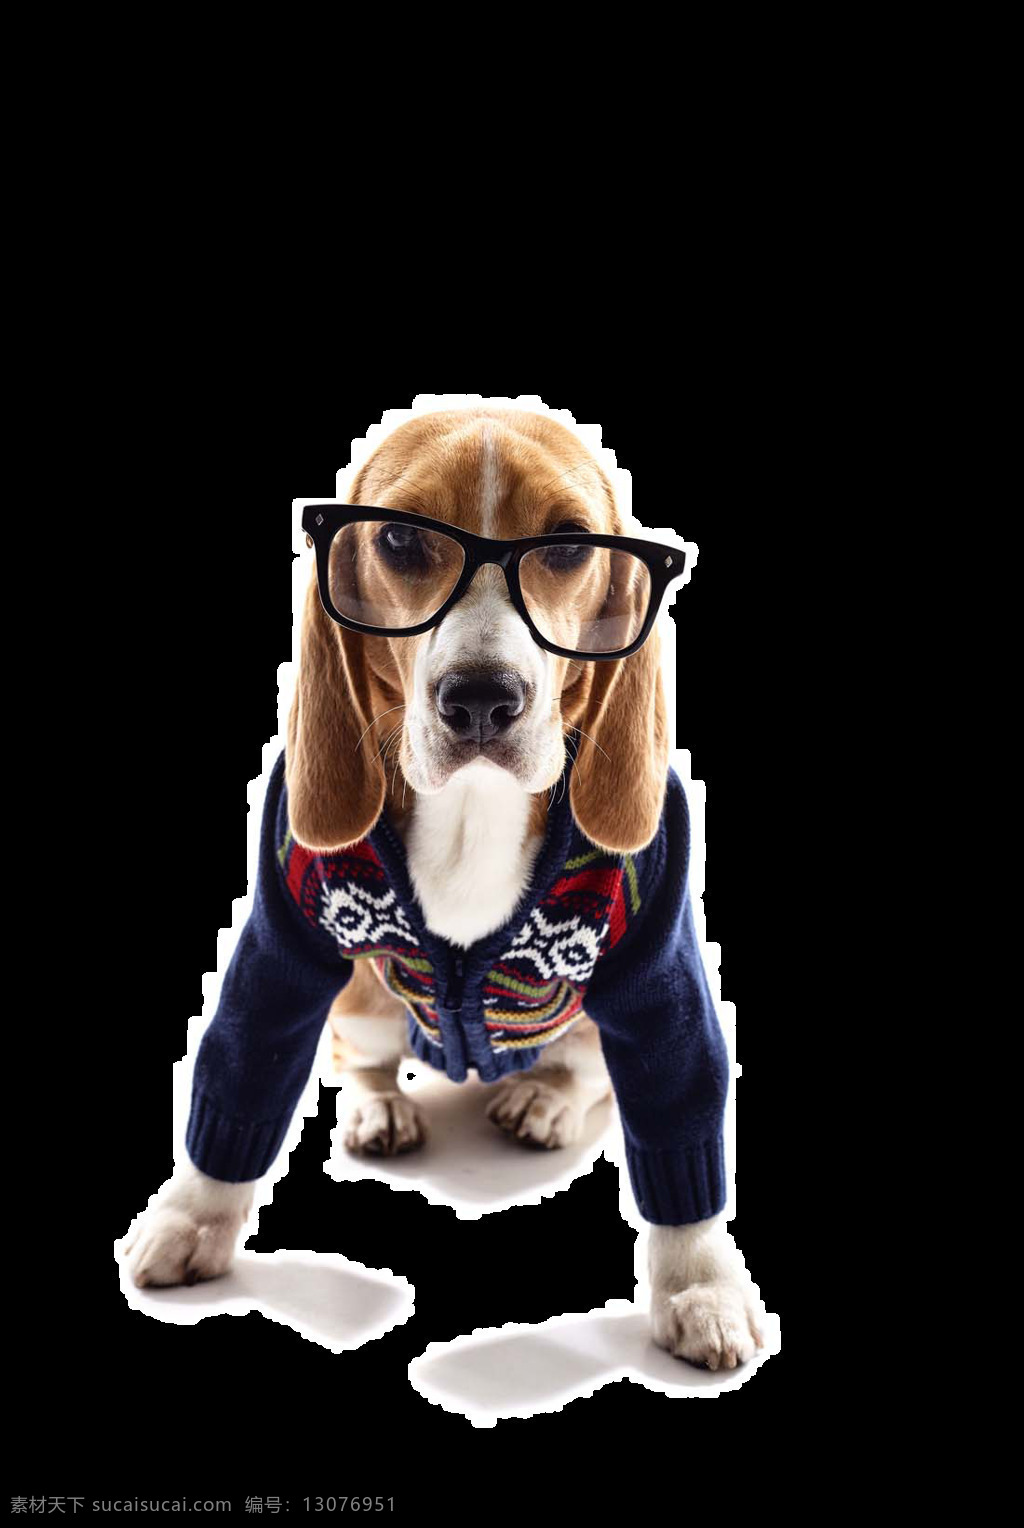 文雅 戴 眼镜 小狗 宠物狗 产品 实物 产品实物 可爱小狗 深蓝色衣服